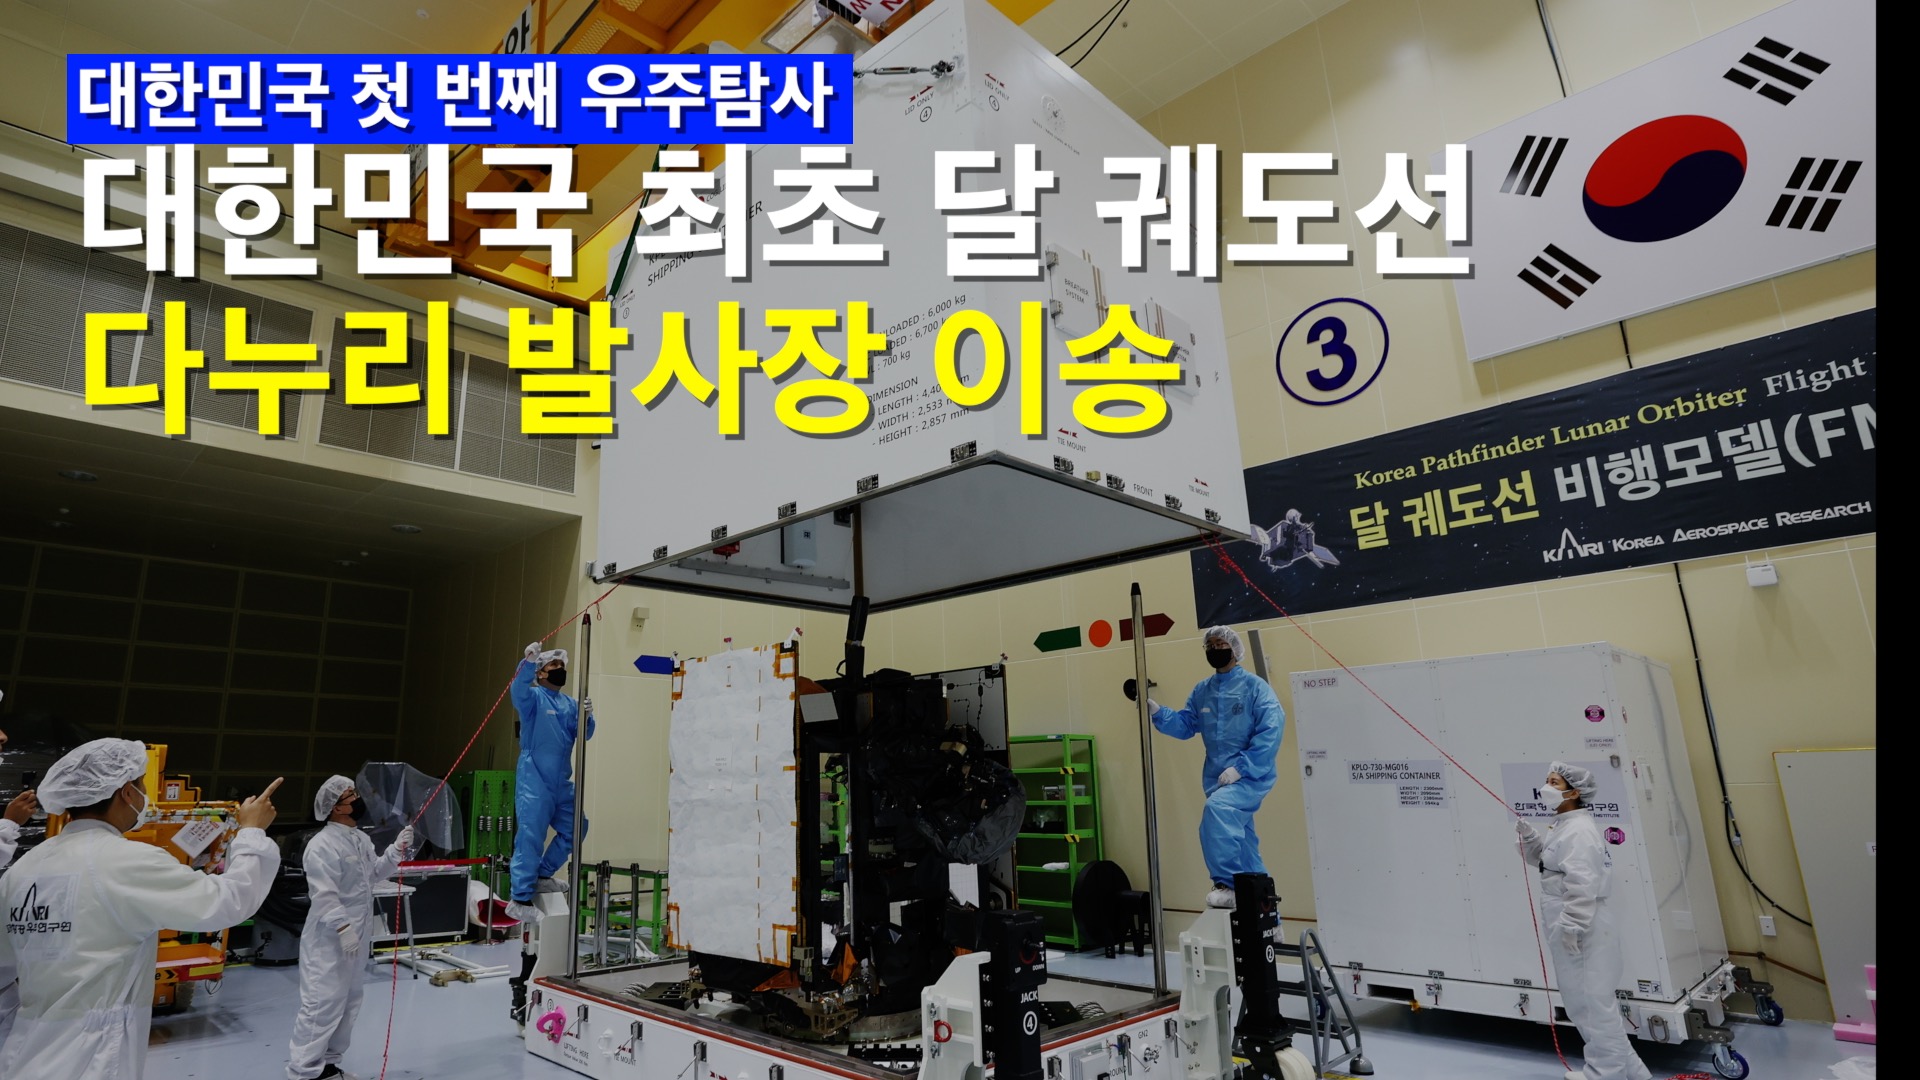 대한민국 최초 달 탐사선 다누리, 발사장 이송 시작!